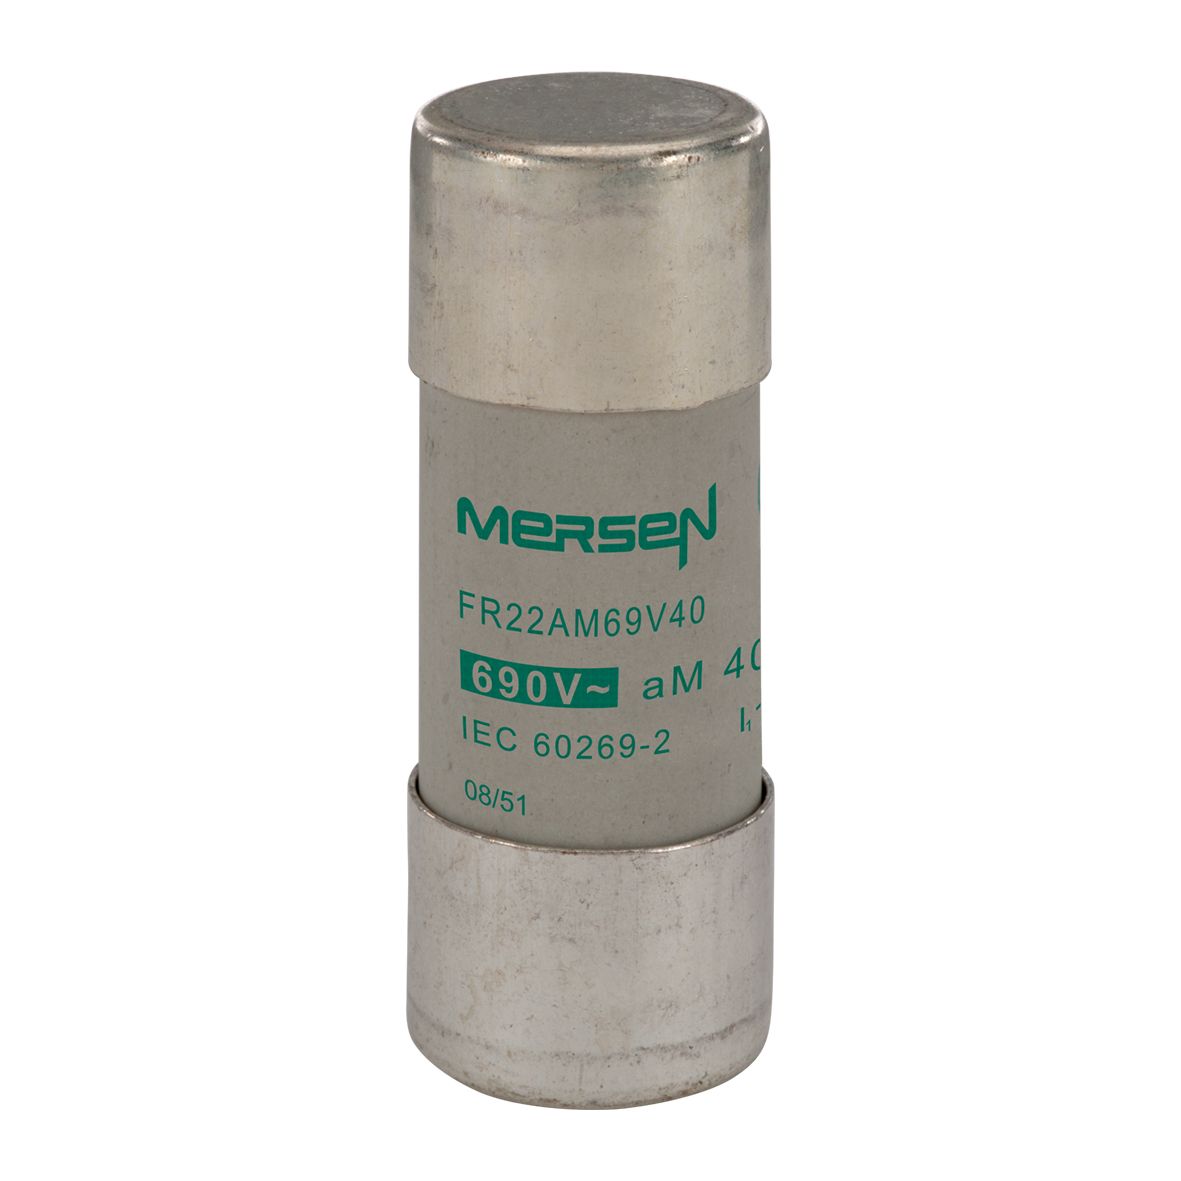 N213613 - Cylindrical fuse-link aM 690VAC 22.2x58, 40A